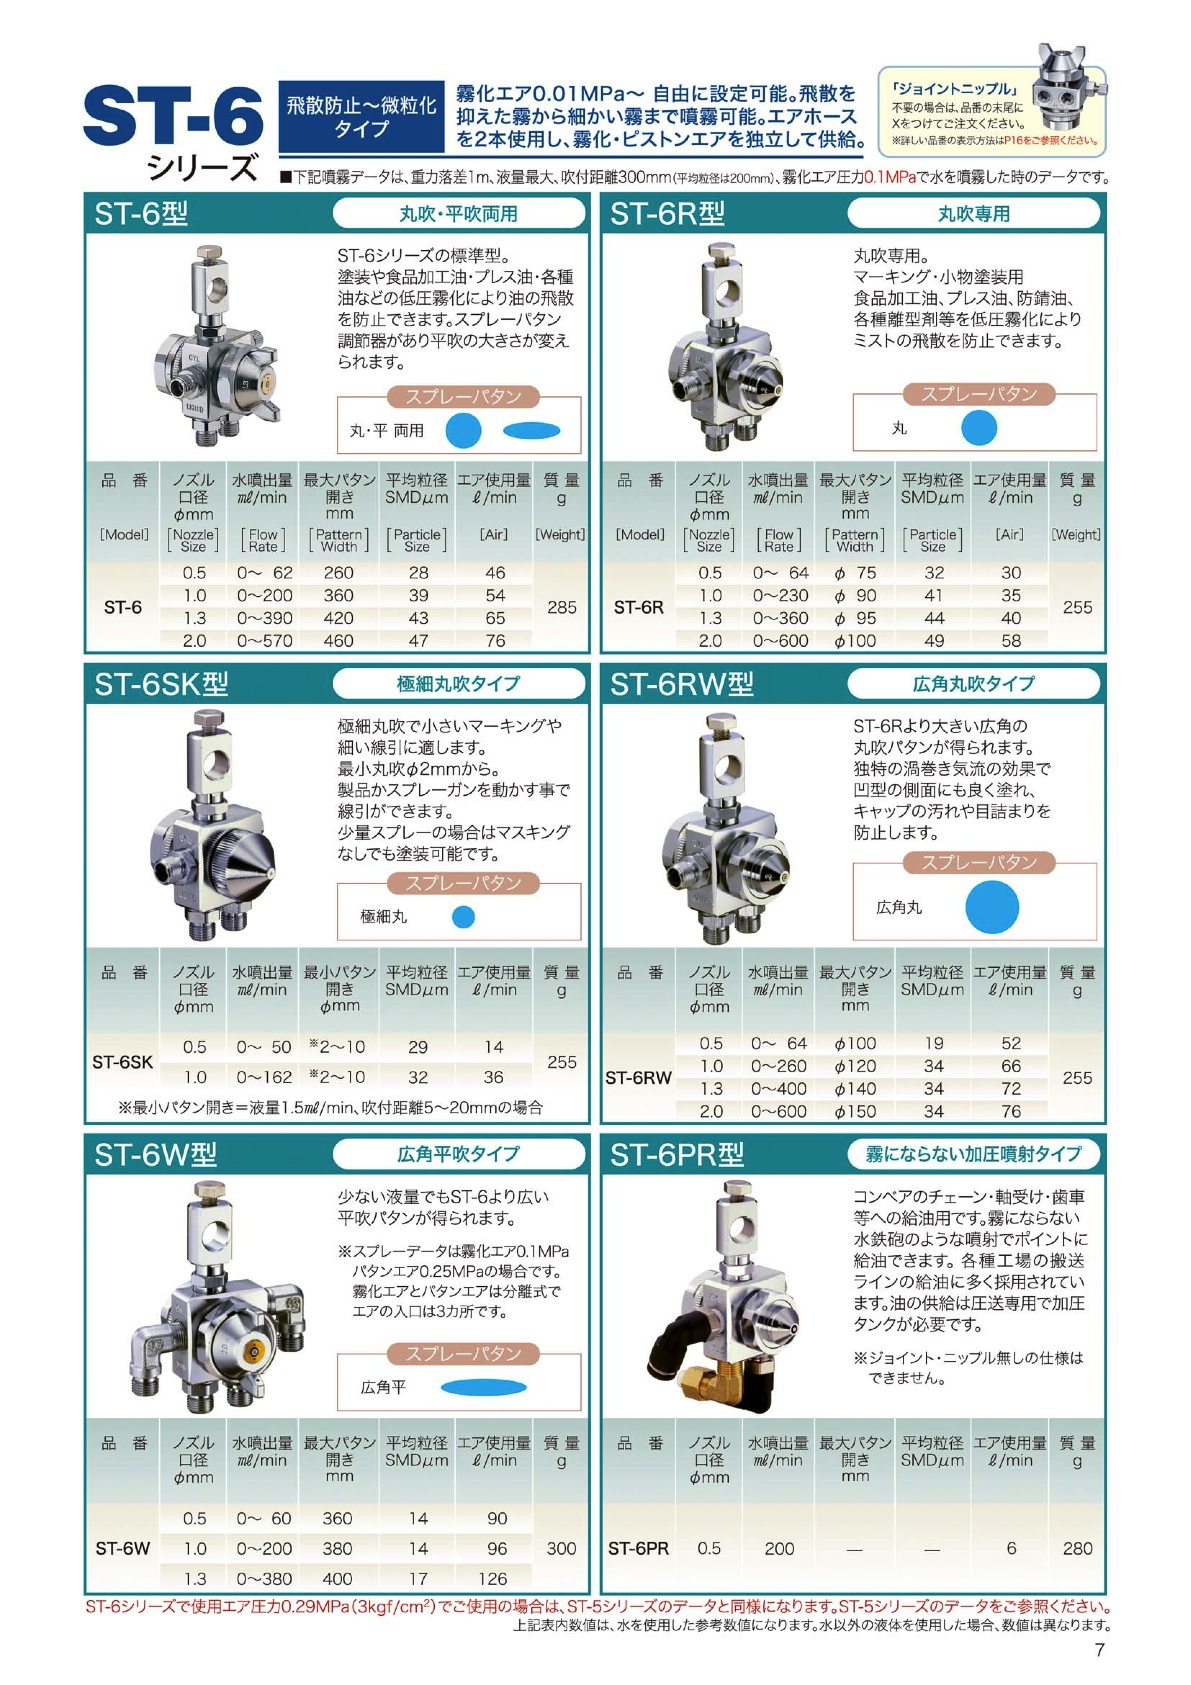 ルミナ自動スプレーガンST-6RW型カタログ 製品カタログ 扶桑精機 | イプロス製造業